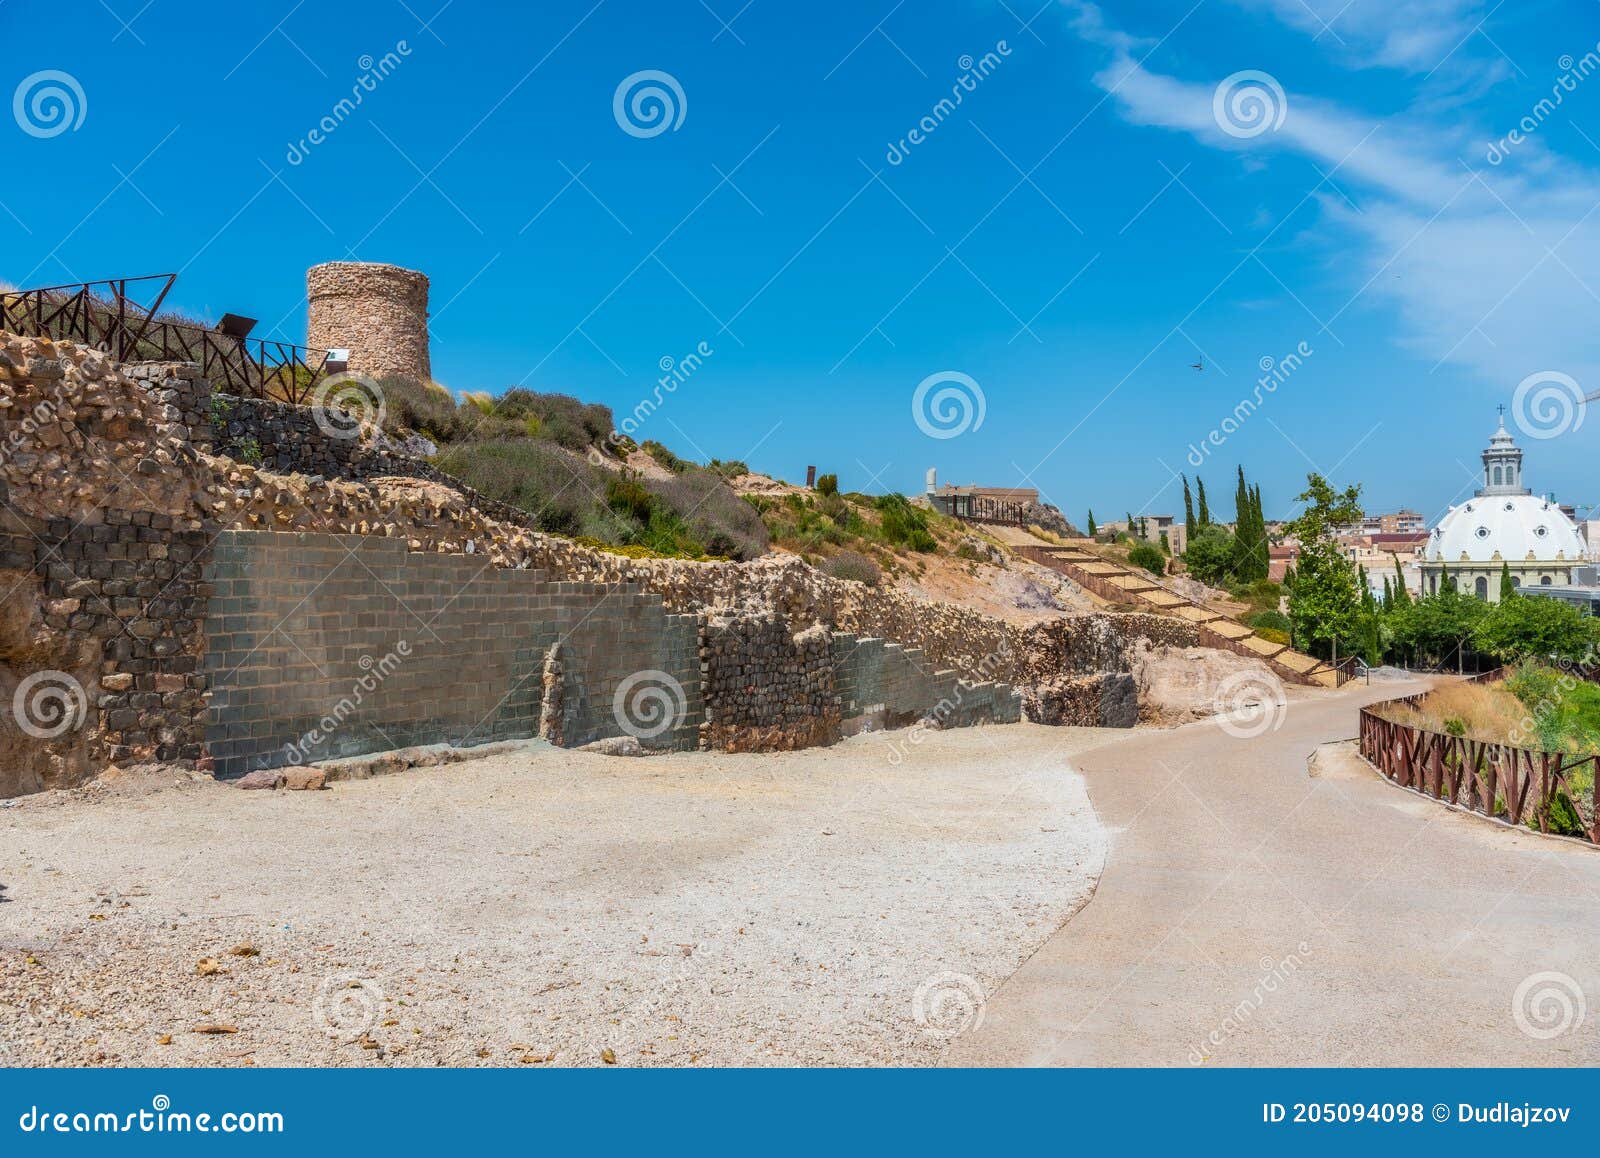 roman ruins at cerro del molinete archeological park in cartagena, spain